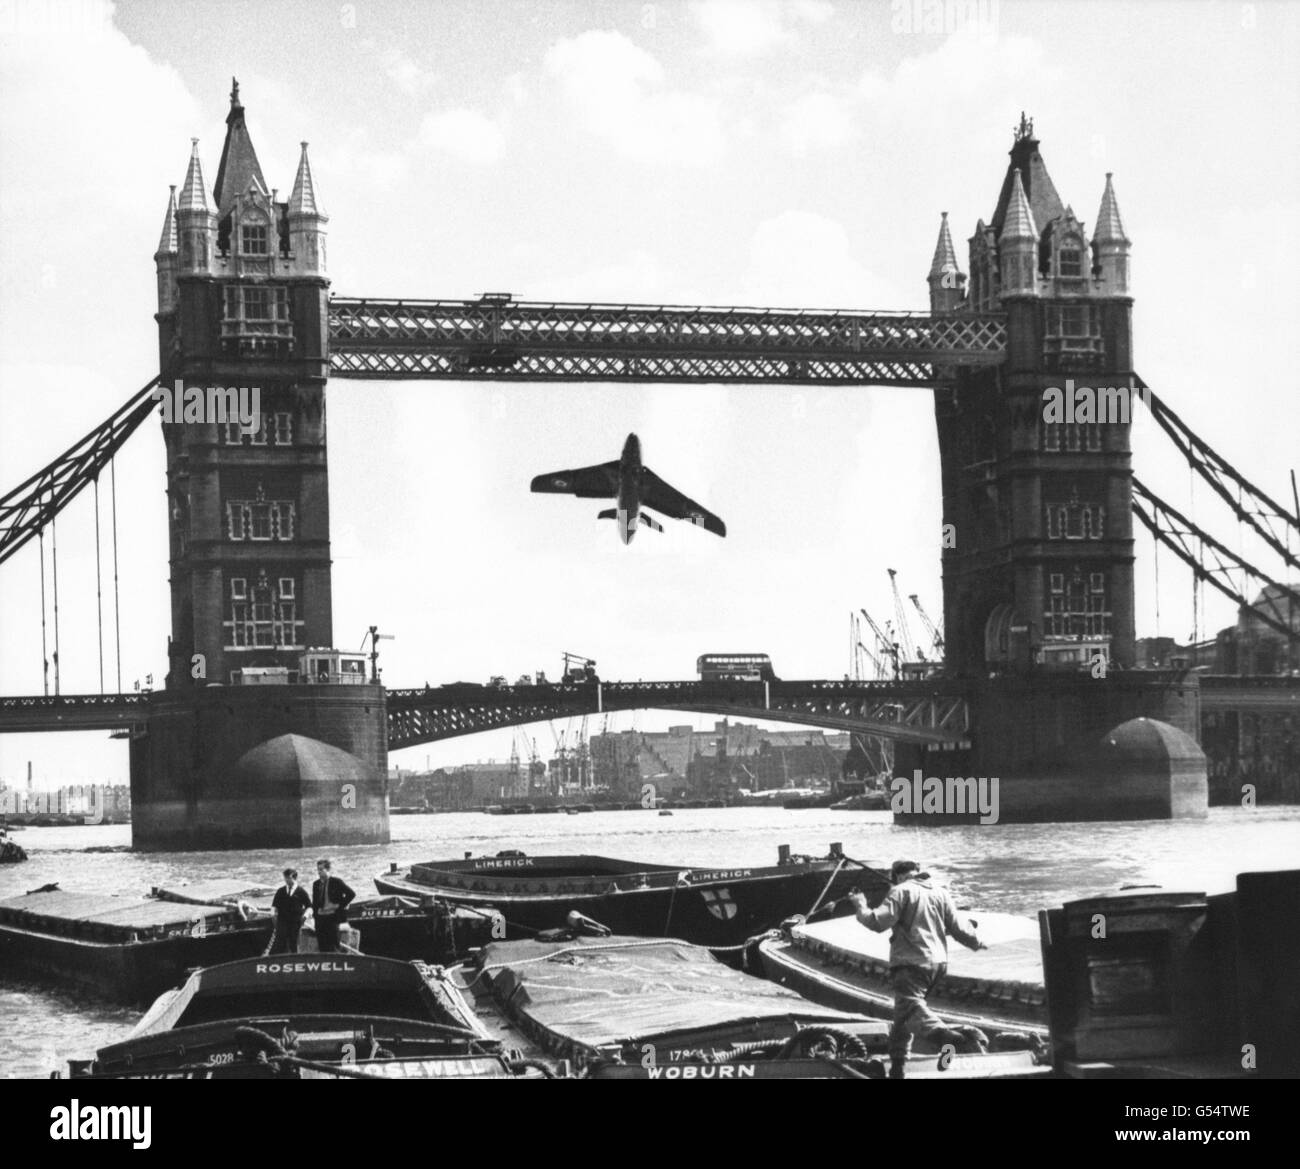 Ein zusammengesetztes Bild eines RAF Hawker Hunter Düsenjägers zwischen den Überspannen der Tower Bridge, das zeigt, wie der jüngste Vorfall an der Bridge ausgesehen hätte. Augenzeugen zufolge hatte ein RAF-Jet am frühen Morgen das Parlamentsgebäude und das Shell-Mex-Gebäude durchgeschummt. Die MOD bestätigte, dass es sich um einen „nicht autorisierten Flug“ handelt und dass die Angelegenheit untersucht wird. Stockfoto